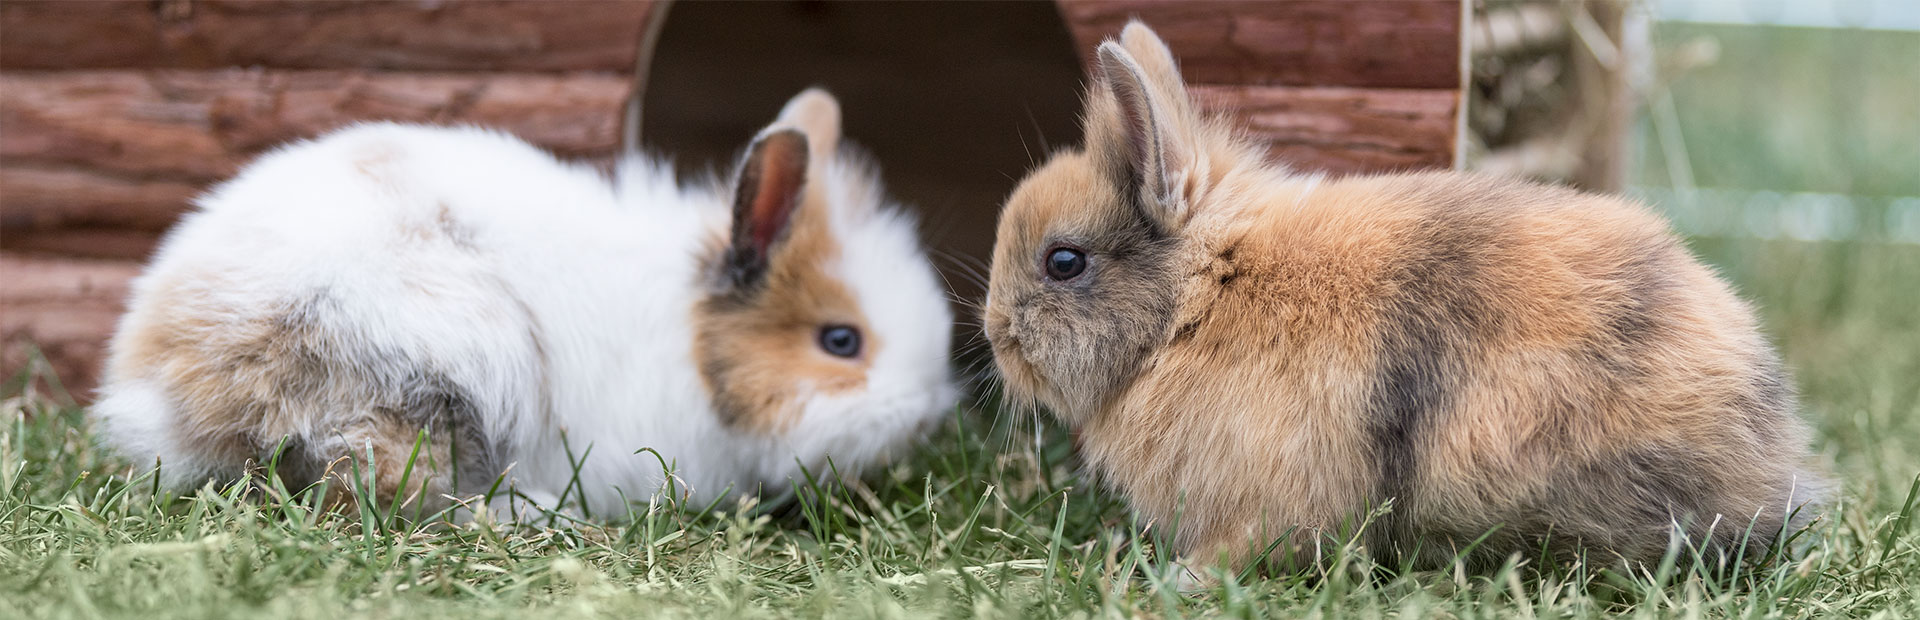 Twee konijnen voor hun huisje in de tuin